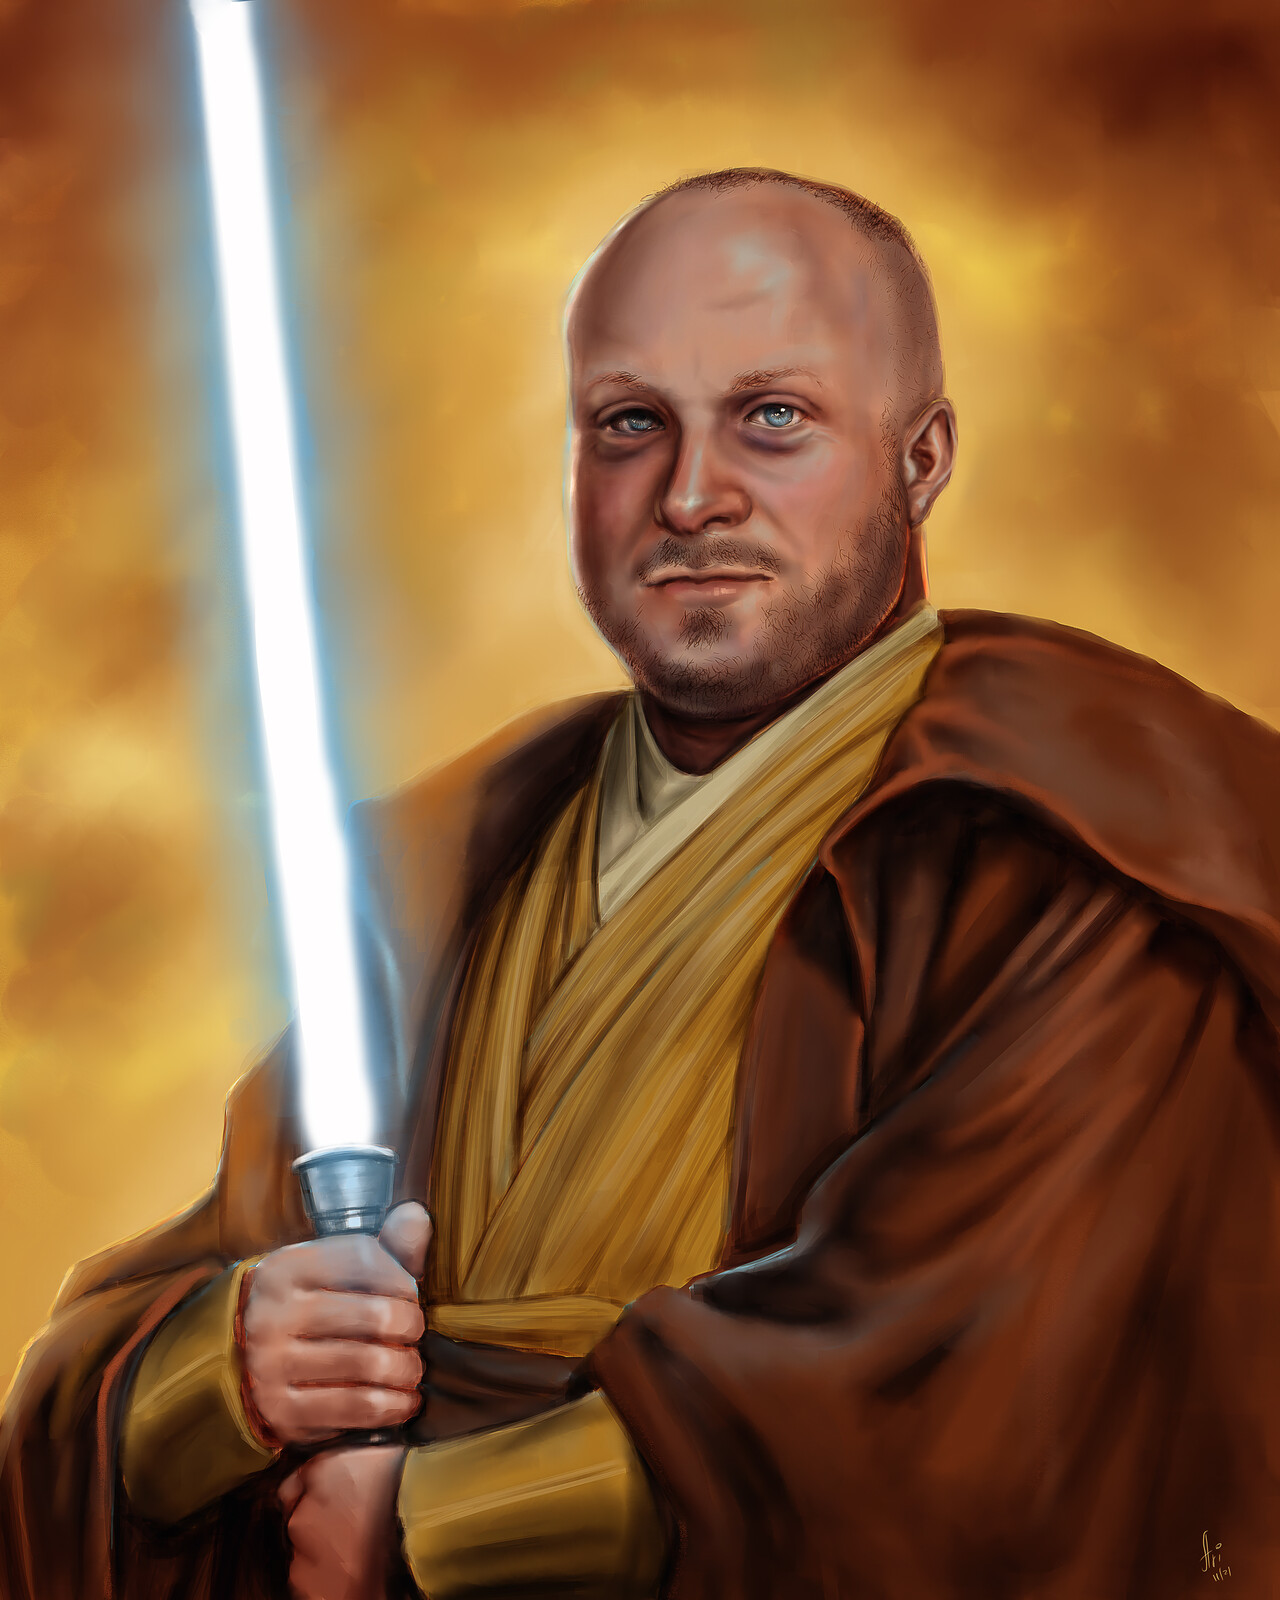 Commission: client's friend as a Jedi